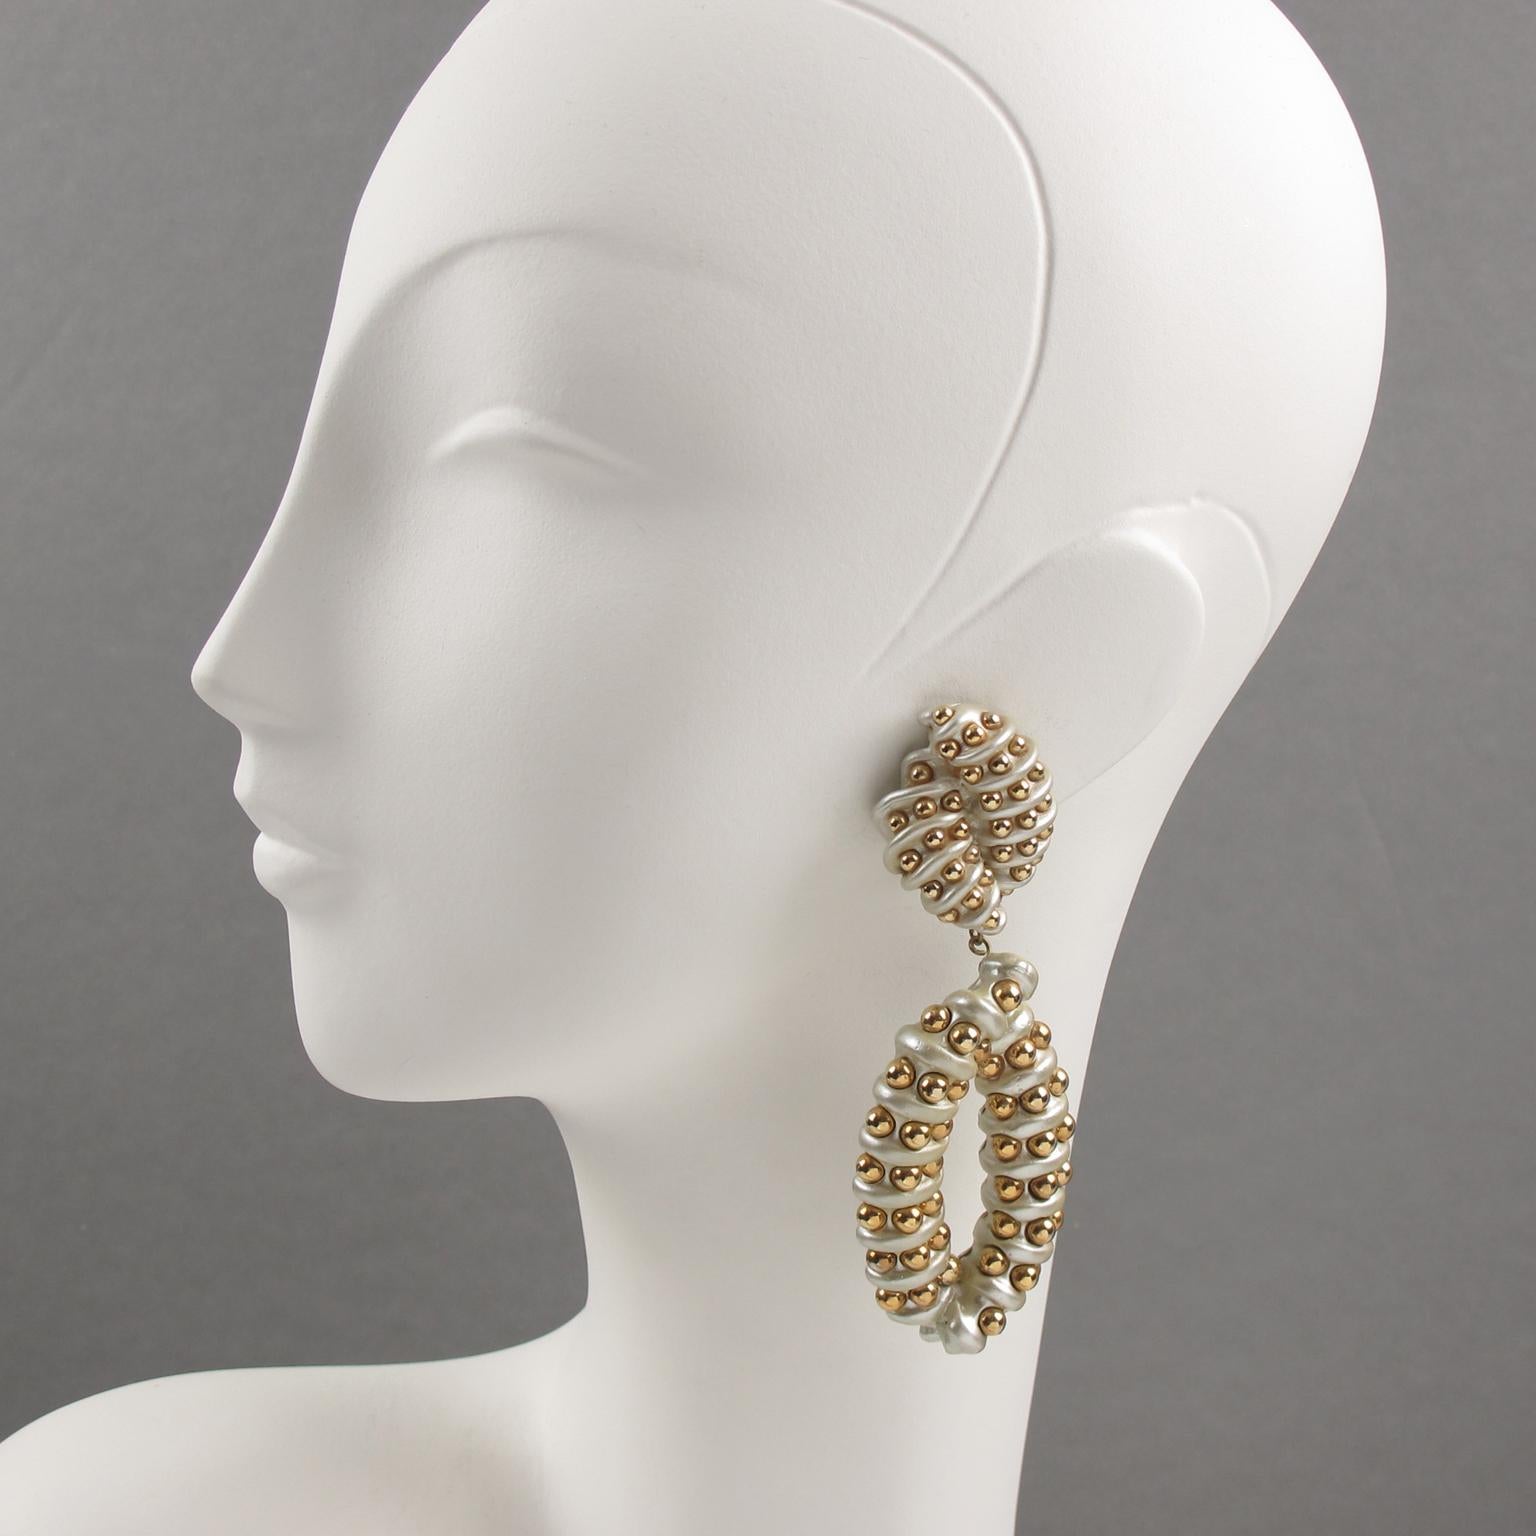 Impressionnantes boucles d'oreilles à clip en forme de lustre surdimensionné des années 1980, conçues par Jewellians. Elles présentent un spectaculaire pendentif en forme de buste avec de la résine blanche perlée ornée de perles de rocaille en métal